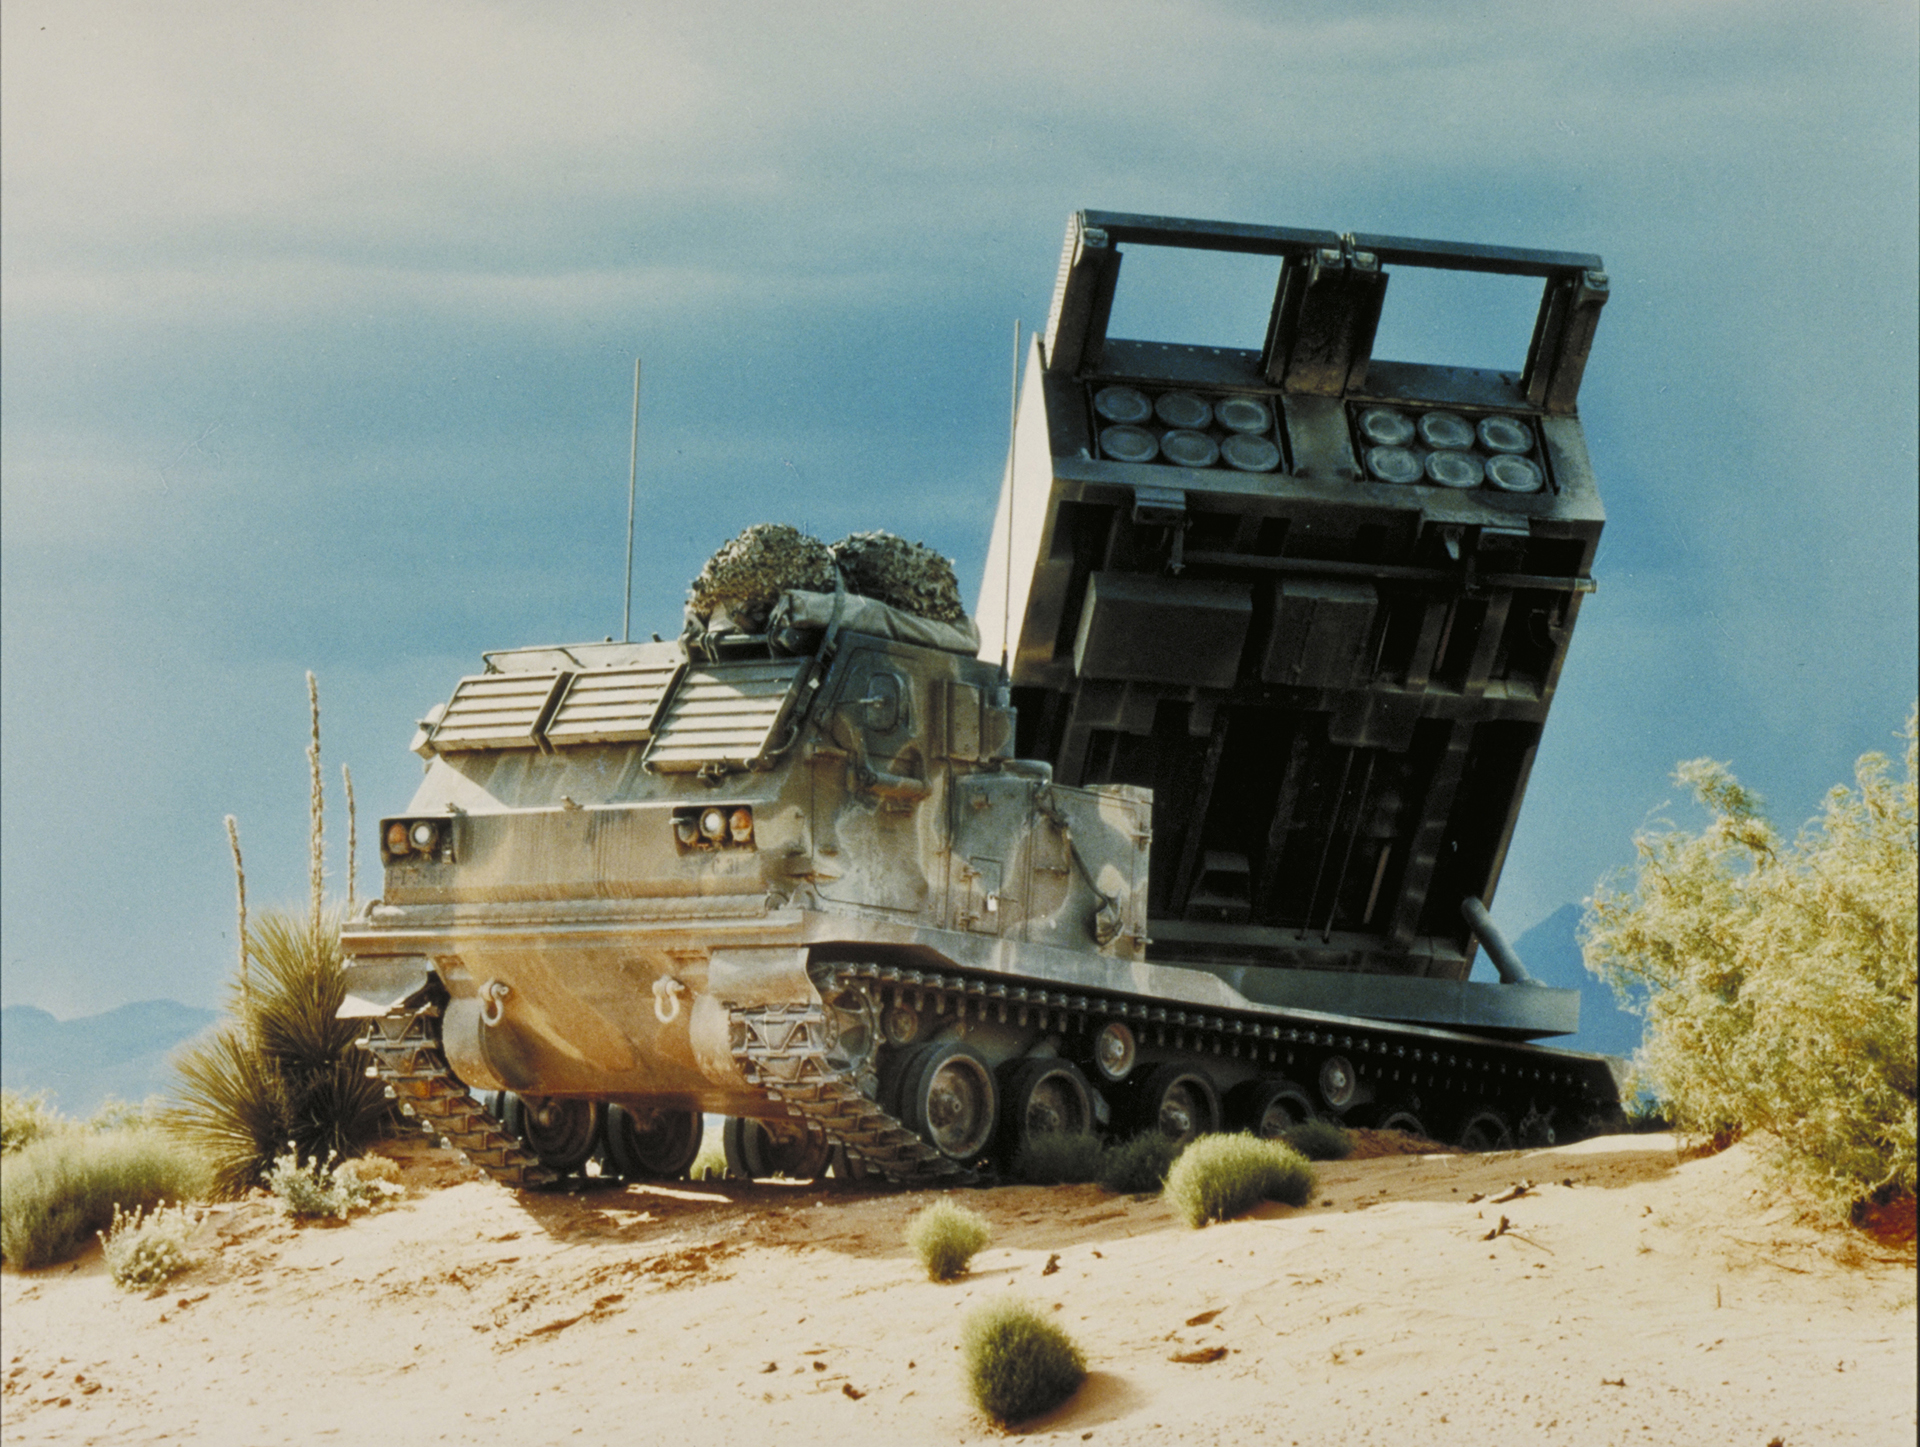 Mlrs Thunder In The Desert Lockheed Martin